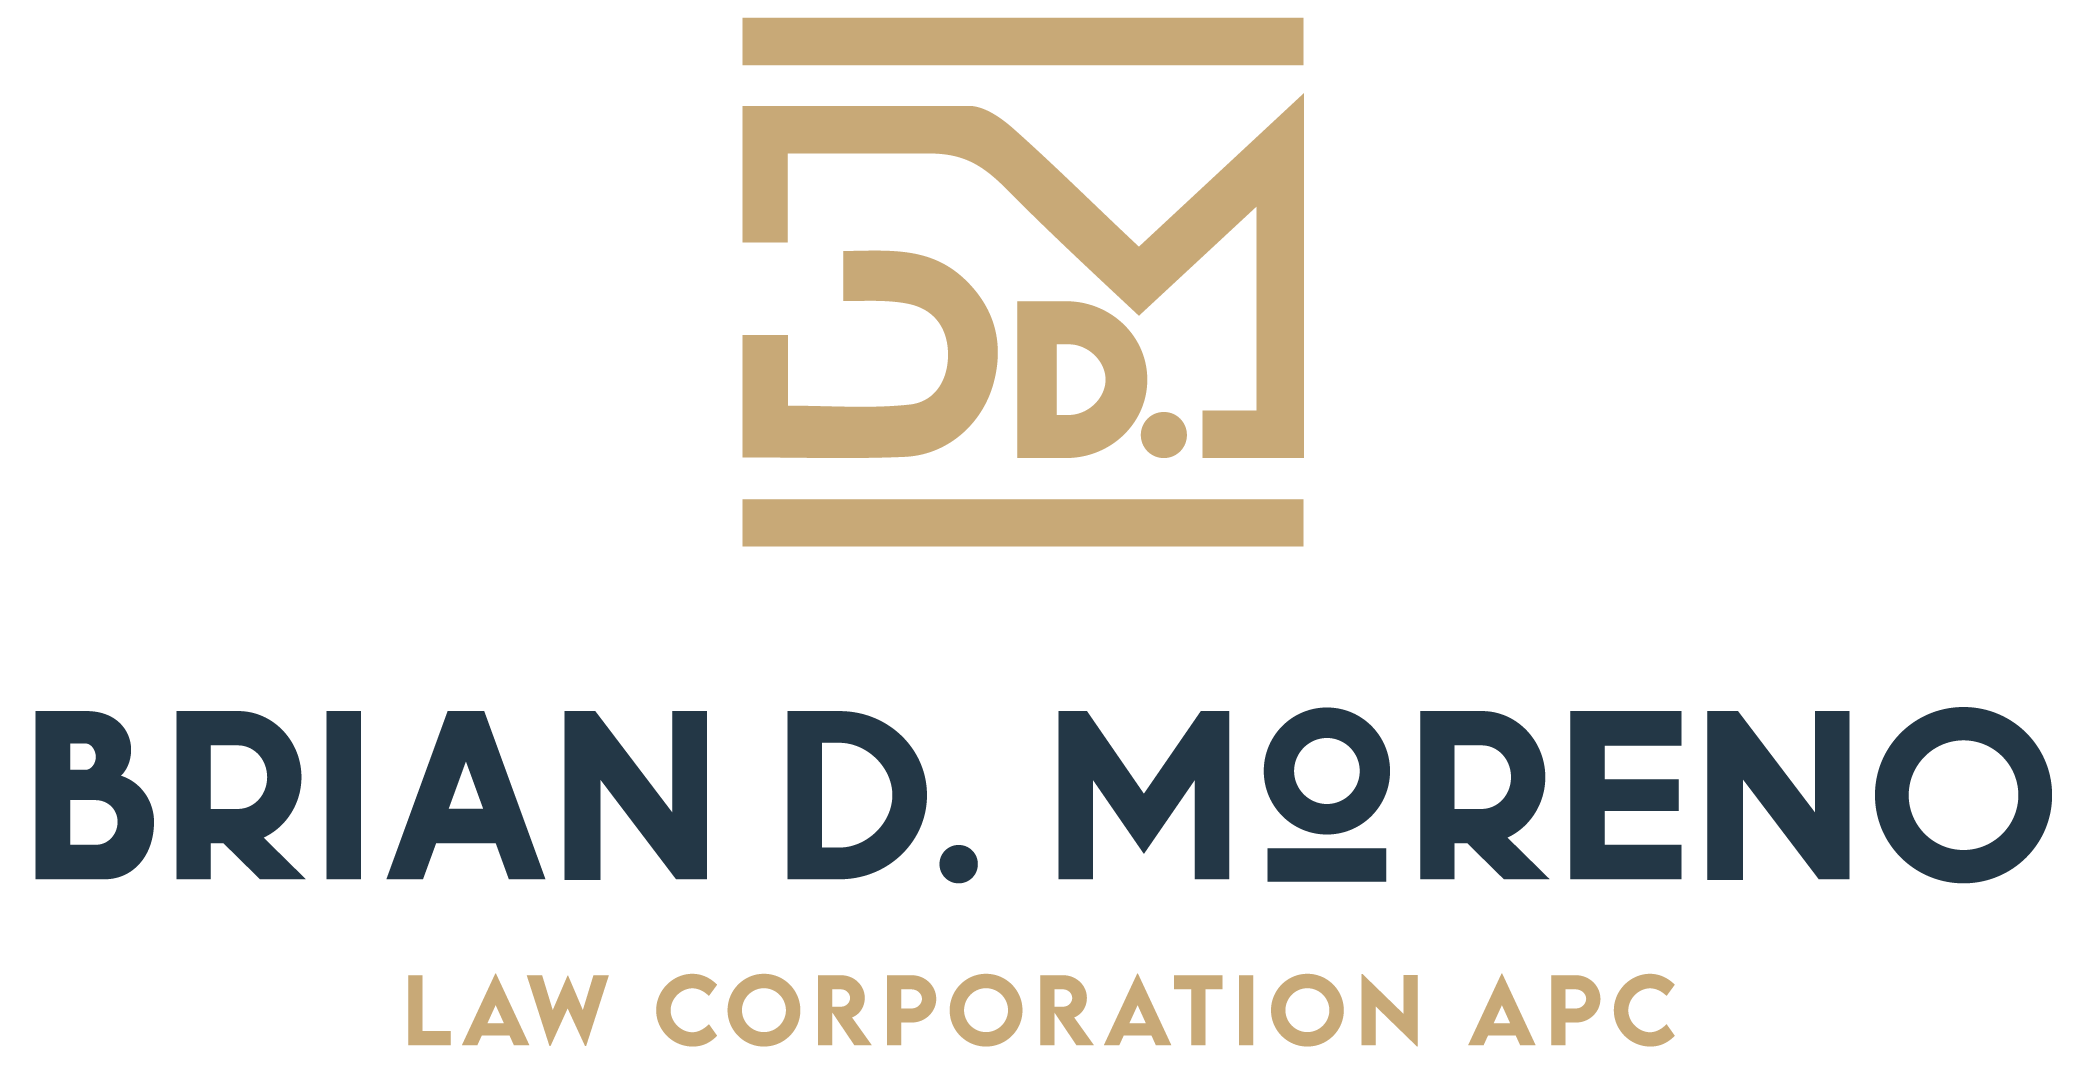 Brian D. Moreno Law Corporation APC